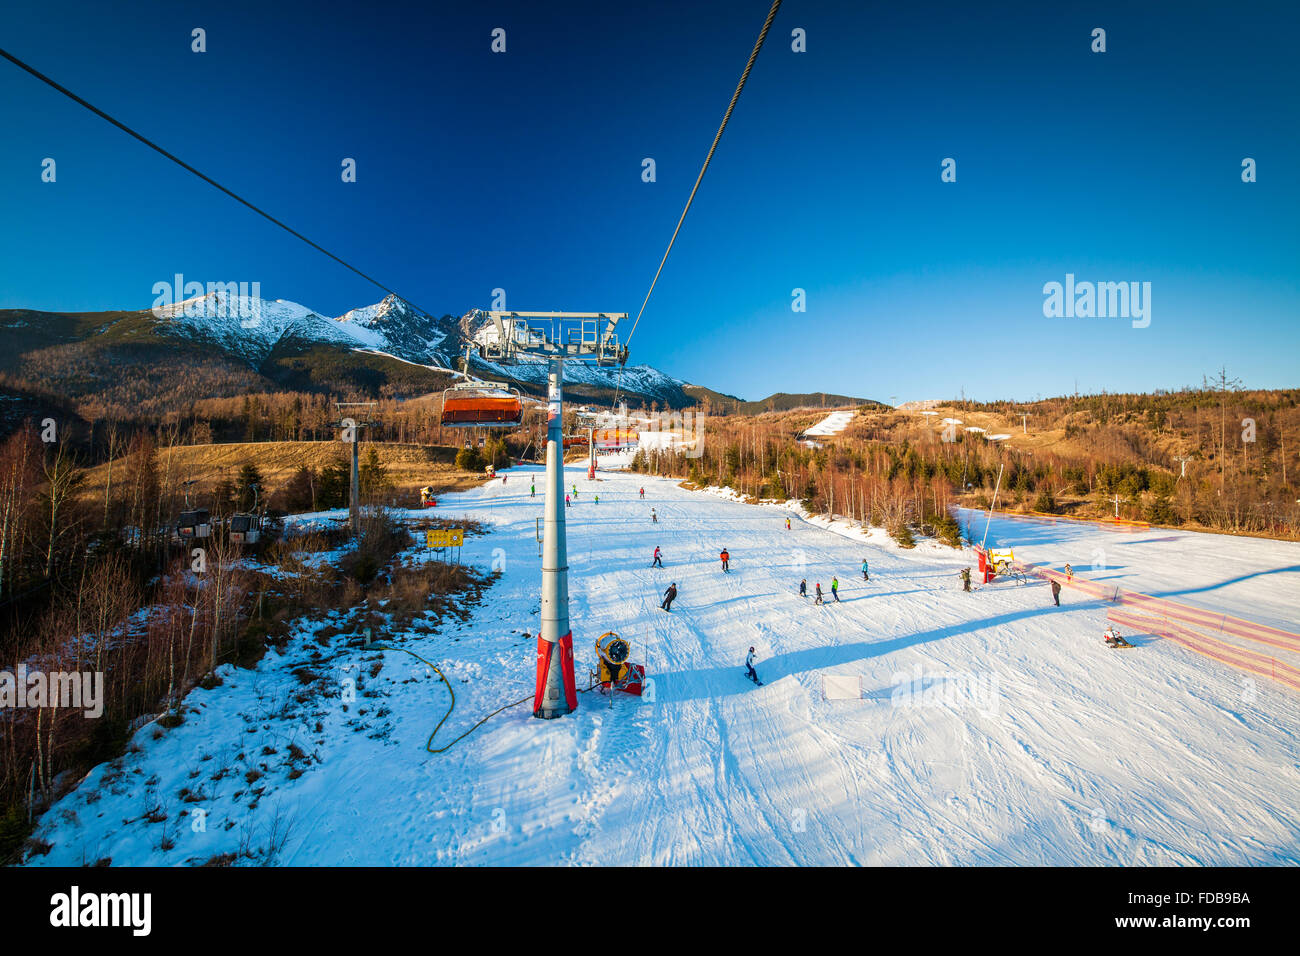 TATRANSKA LOMNICA, Slowakei, 23. Dezember 2015: Seilbahn auf ein beliebtes Skigebiet in Tatranska Lomnica, Tatra, mit 6 km lang zu tun Stockfoto